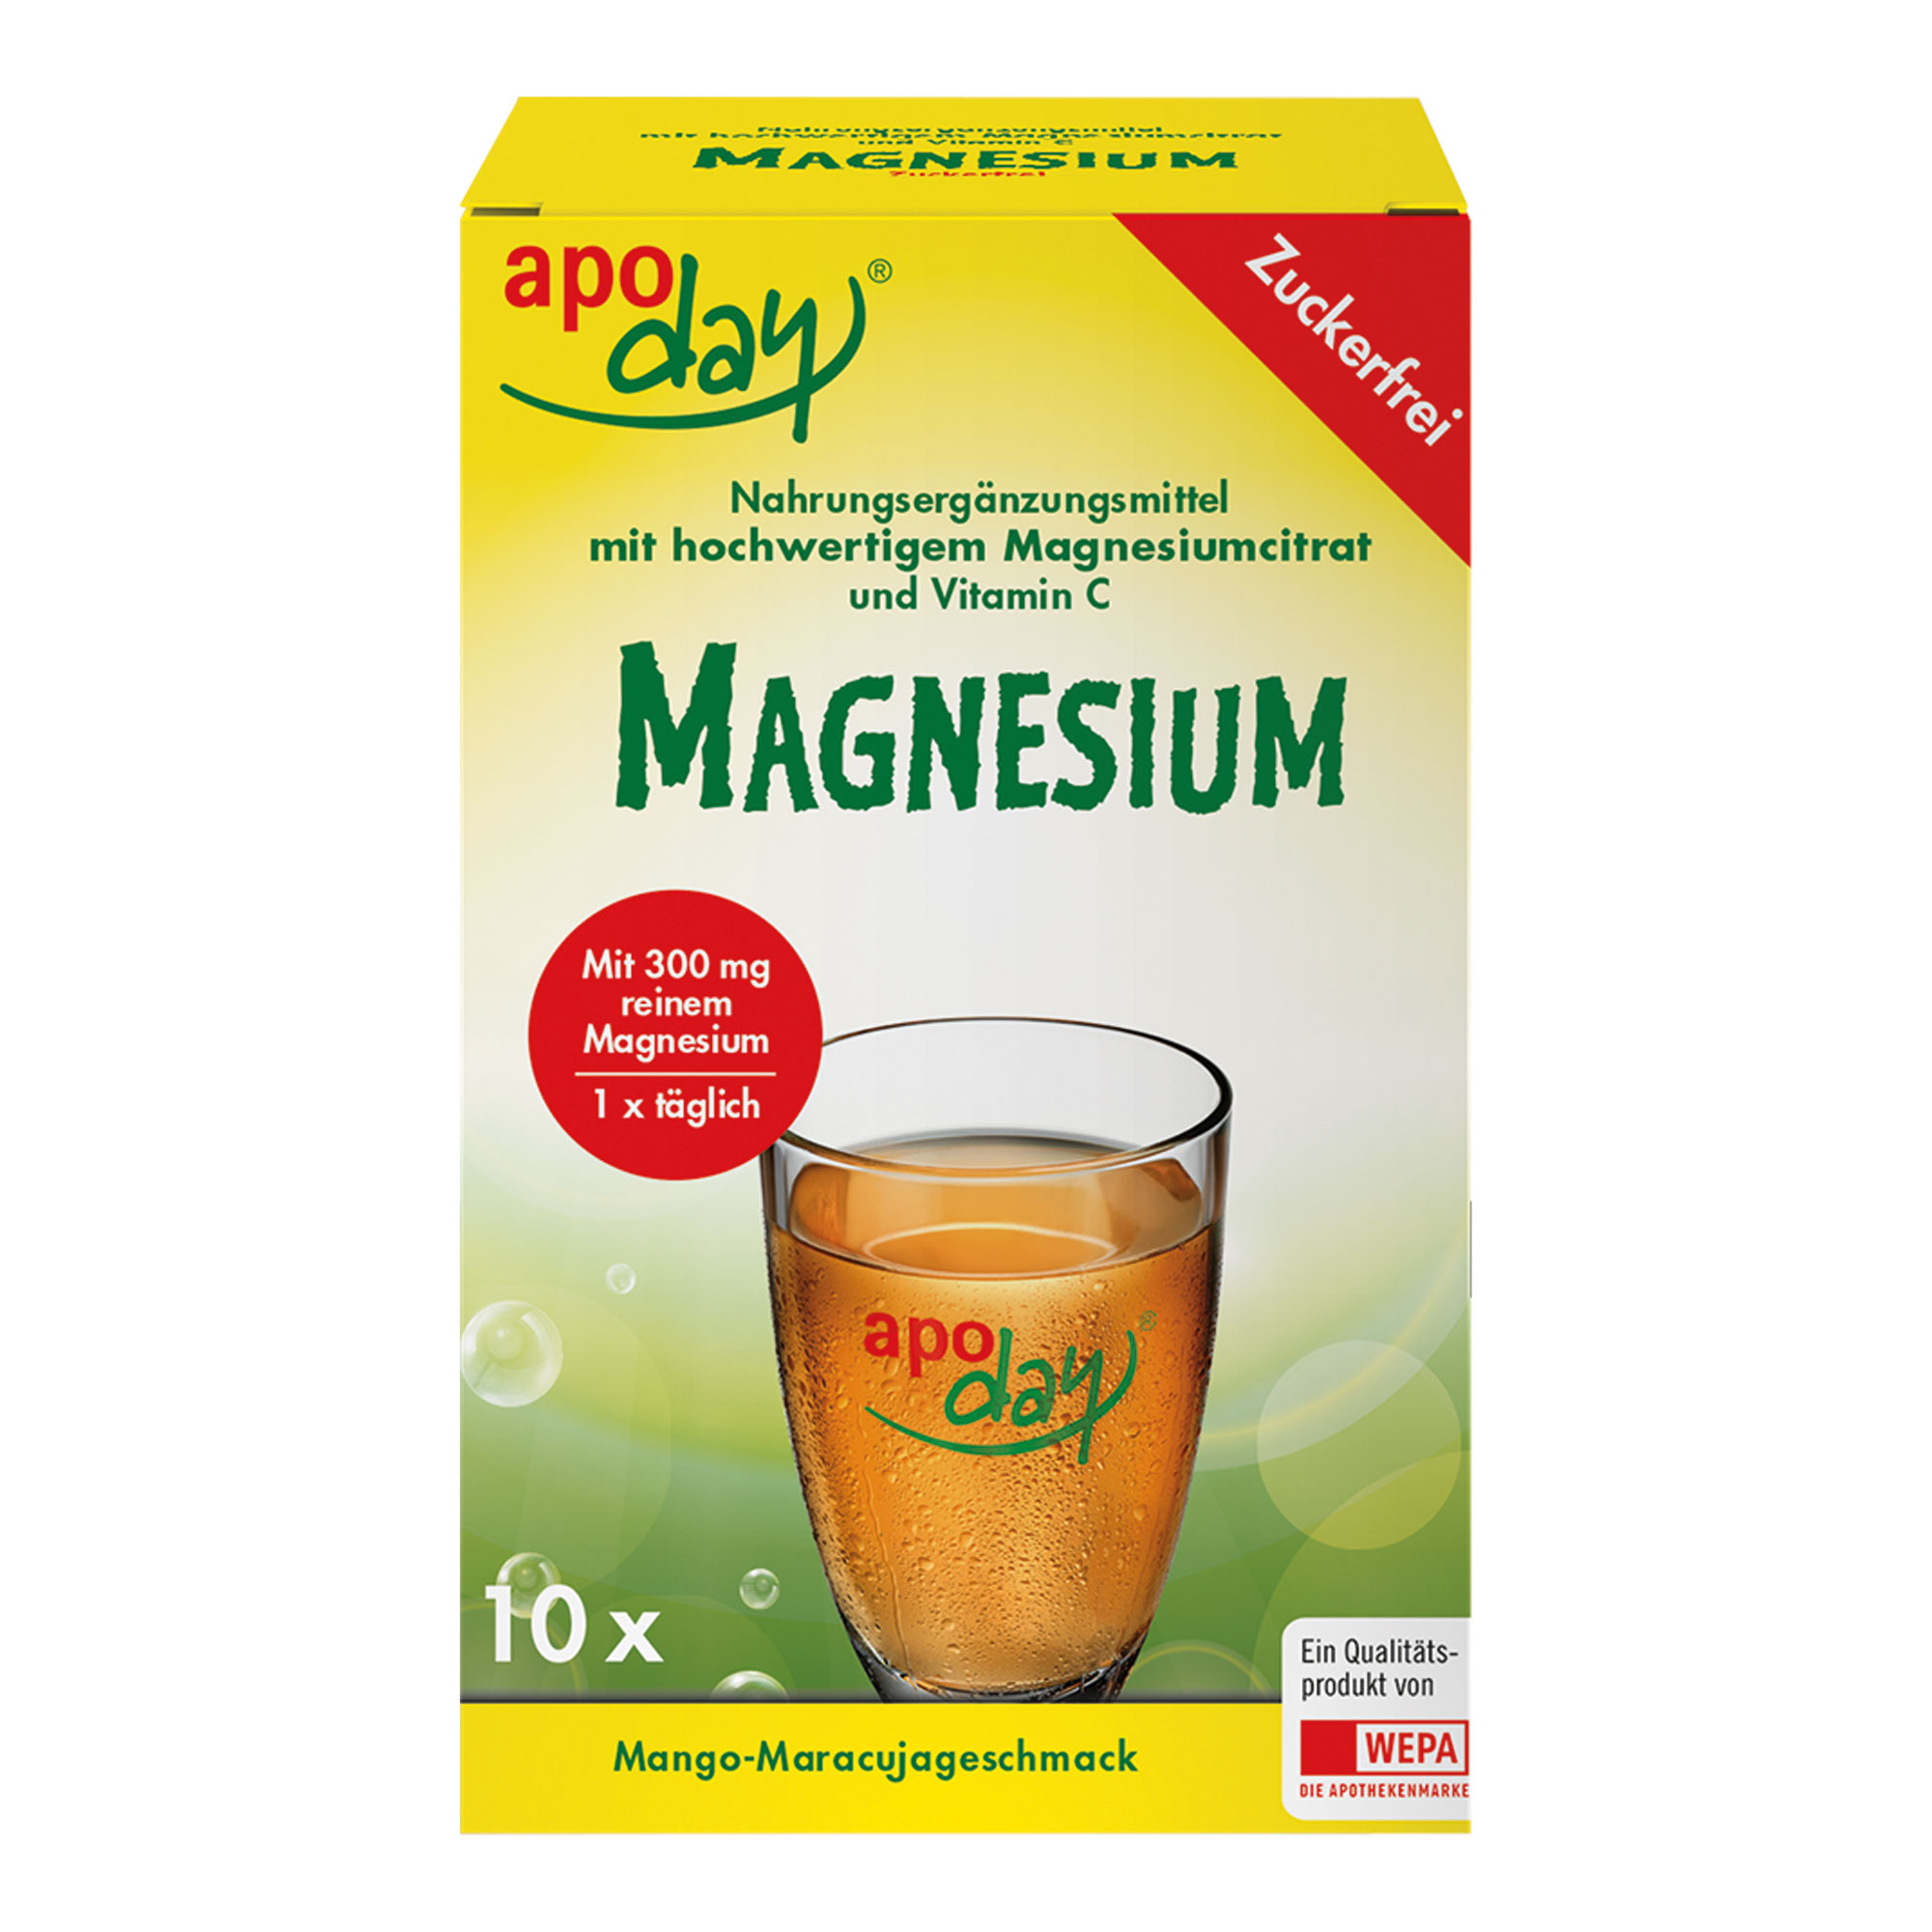 Nahrungsergänzungsmittel mit Magnesiumcitrat, Vitamin C und Süßungsmitteln.